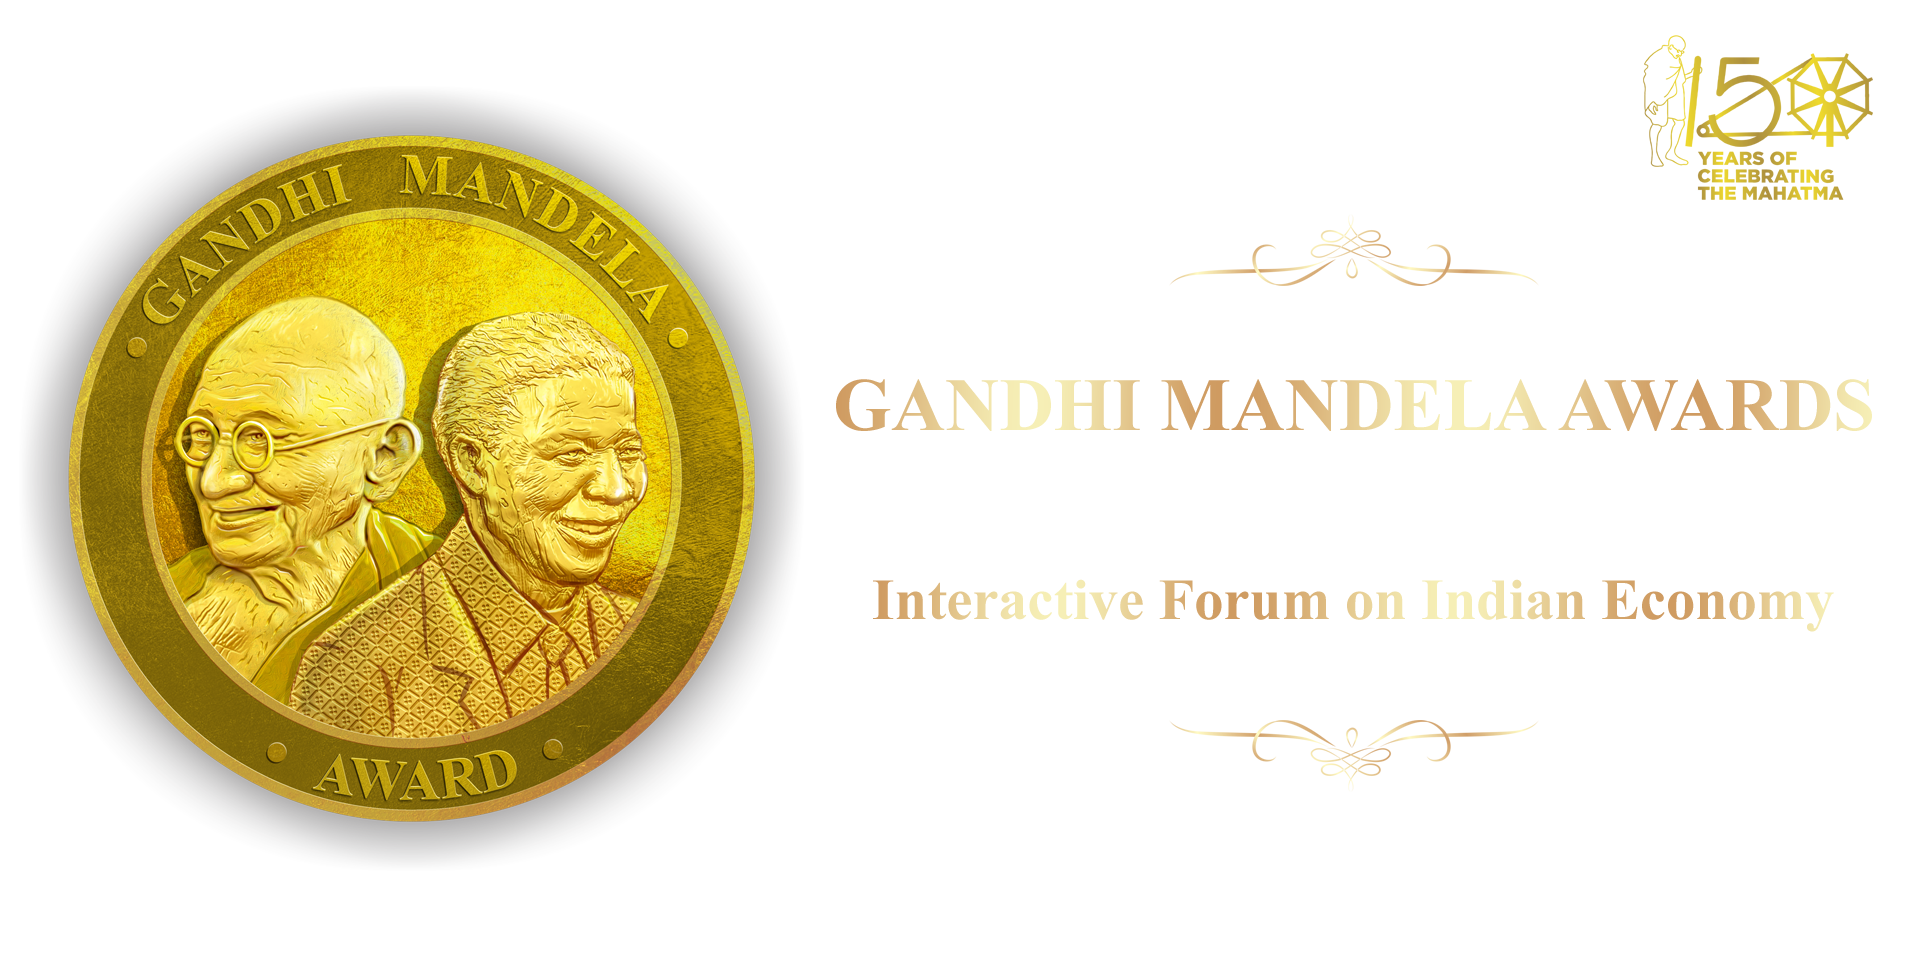 Gandhi Mandele Award for Excellence